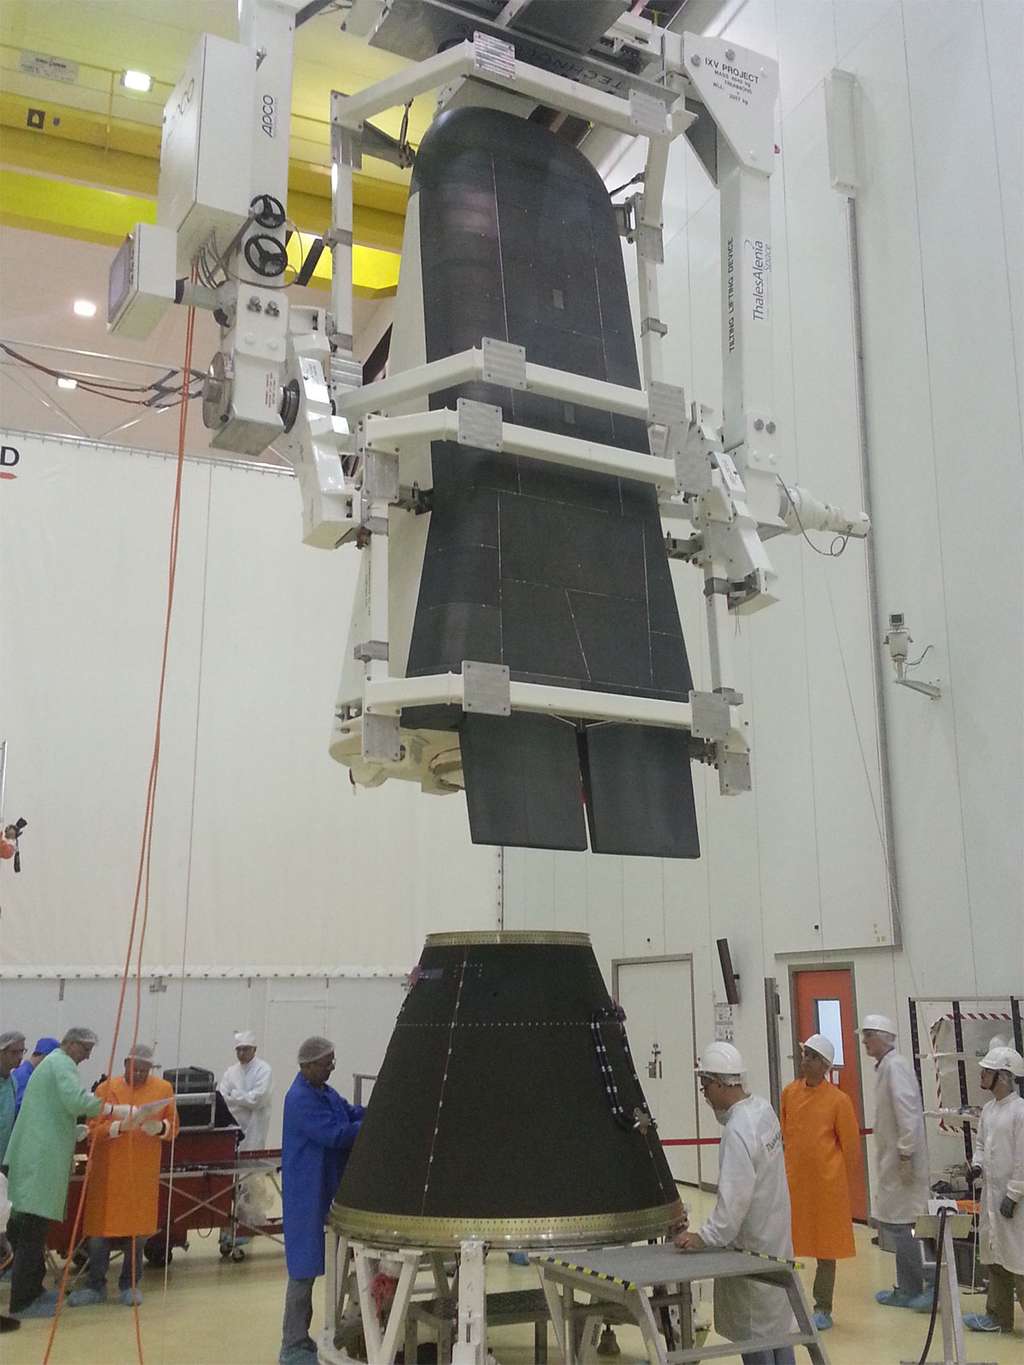 Avant l'annonce du report du lancement, les équipes de Thales Alenia Space préparaient l'installation de l'IXV sur Vega. À l'image, les vérifications de la compatibilité entre le démonstrateur et l'adaptateur Vega. © Thales Alenia Space